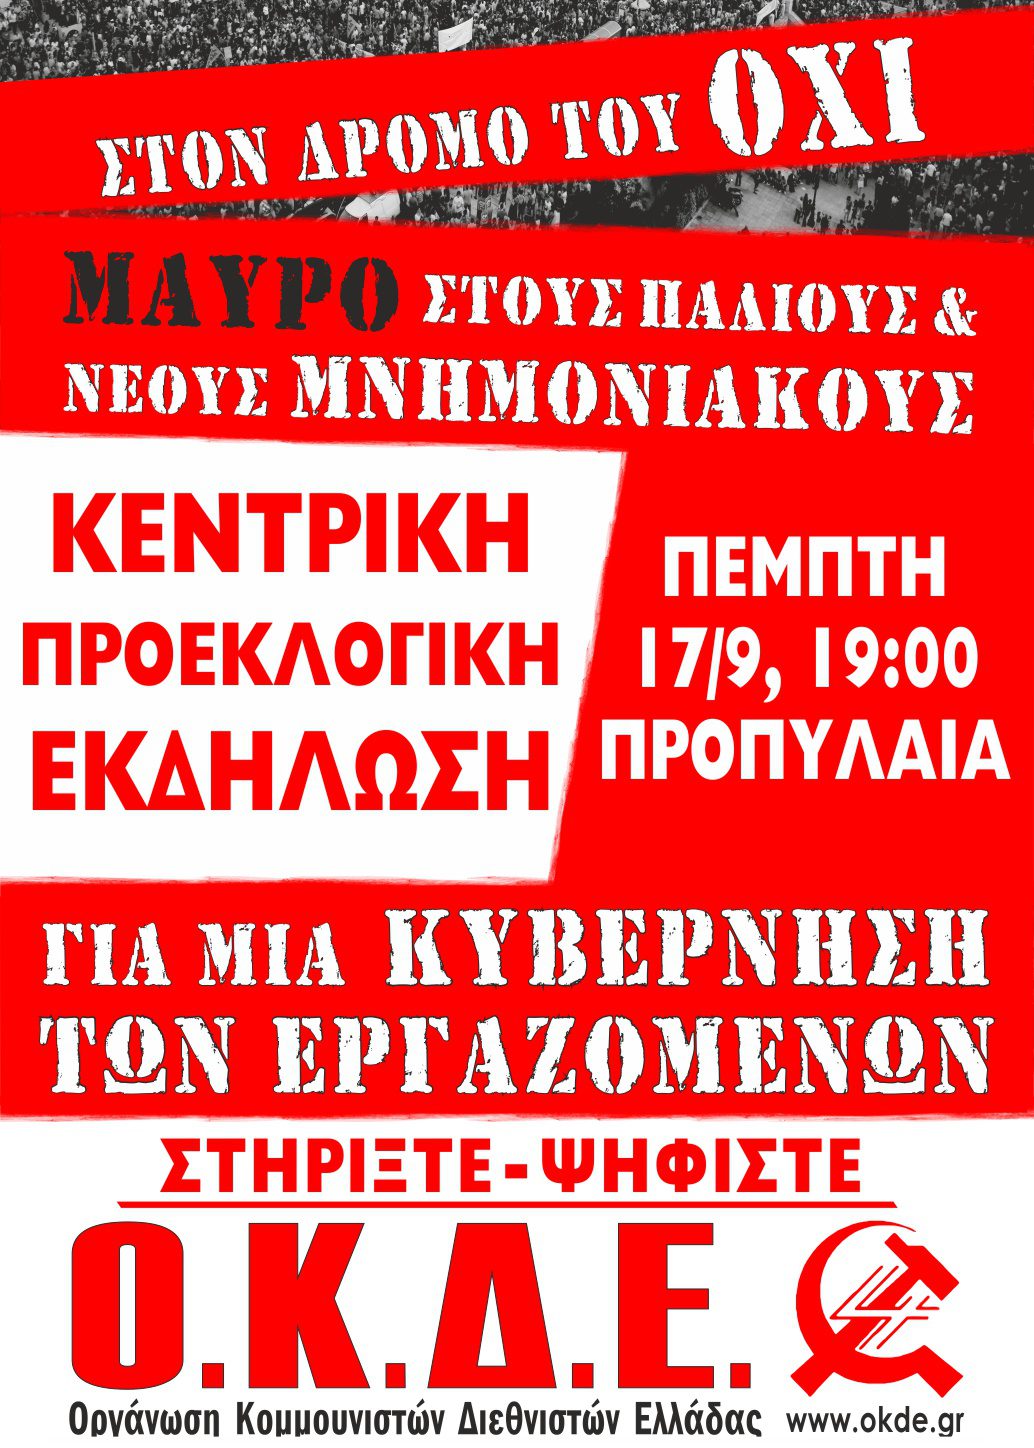 Πέμπτη 17/9 στις 19:00 στα Προπύλαια, κεντρική προεκλογική εκδήλωση της ΟΚΔΕ στην Αθήνα